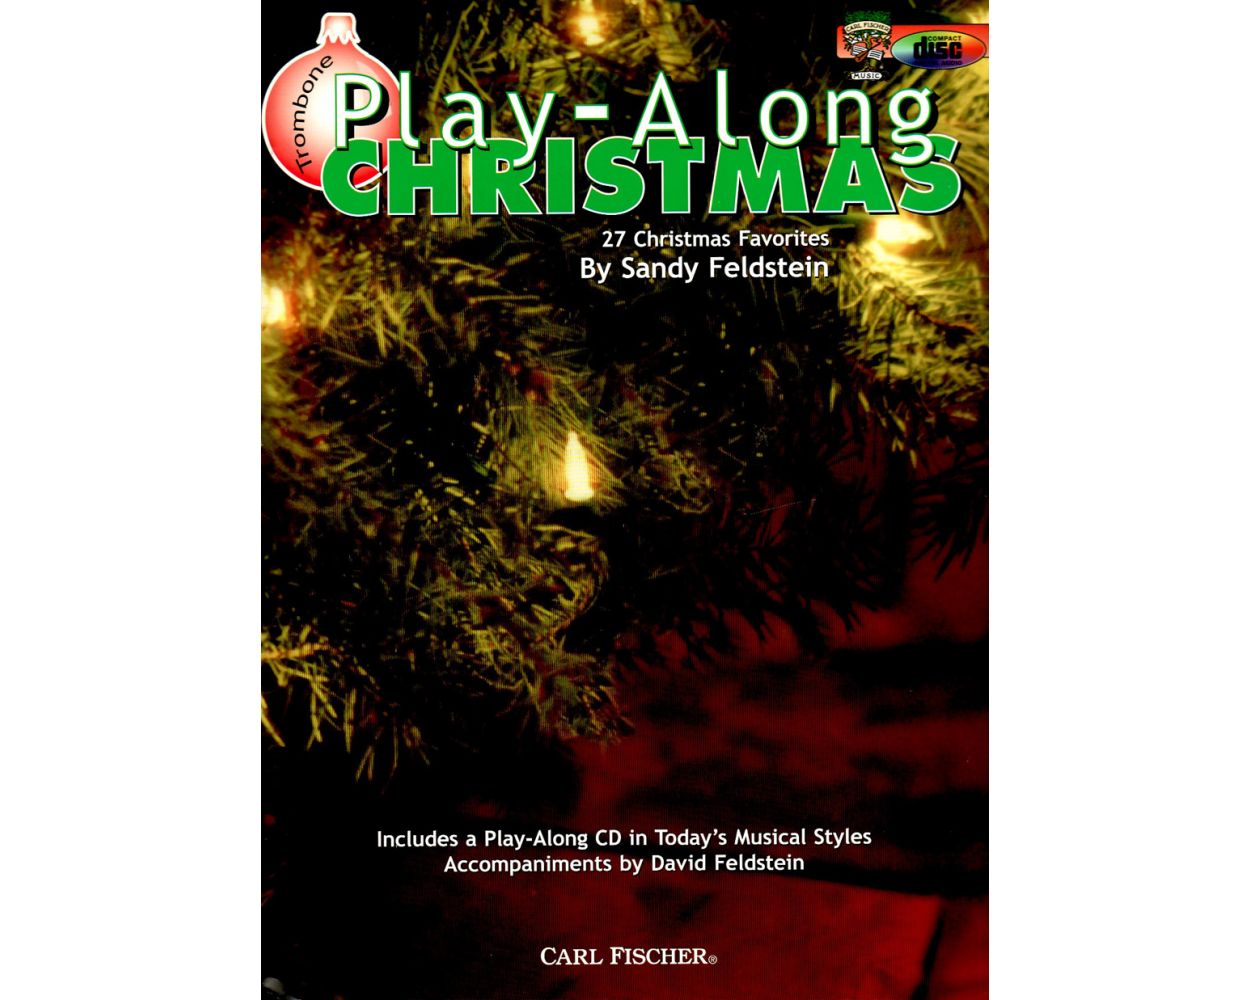 【輸入楽譜】プレイ・アロング・クリスマス - 珠玉のクリスマス曲27選/Feldstein編: CD付